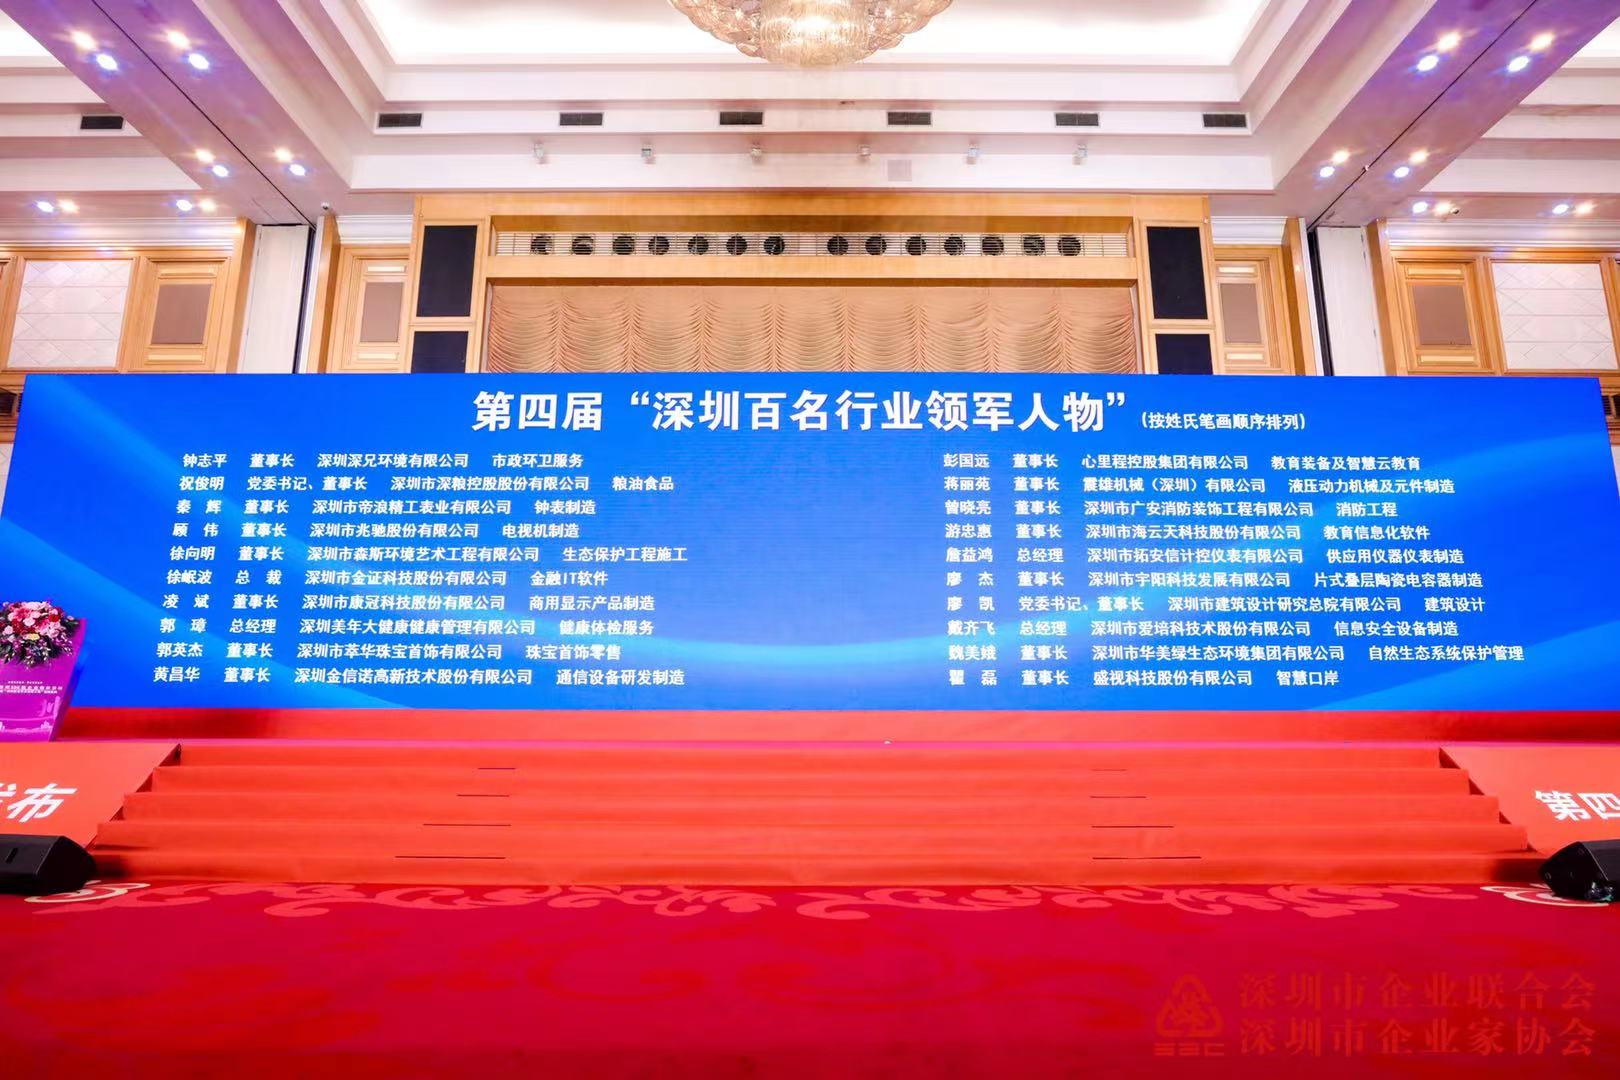 2021深圳500强暨百名行业领军人物授牌盛典在深圳隆重举行